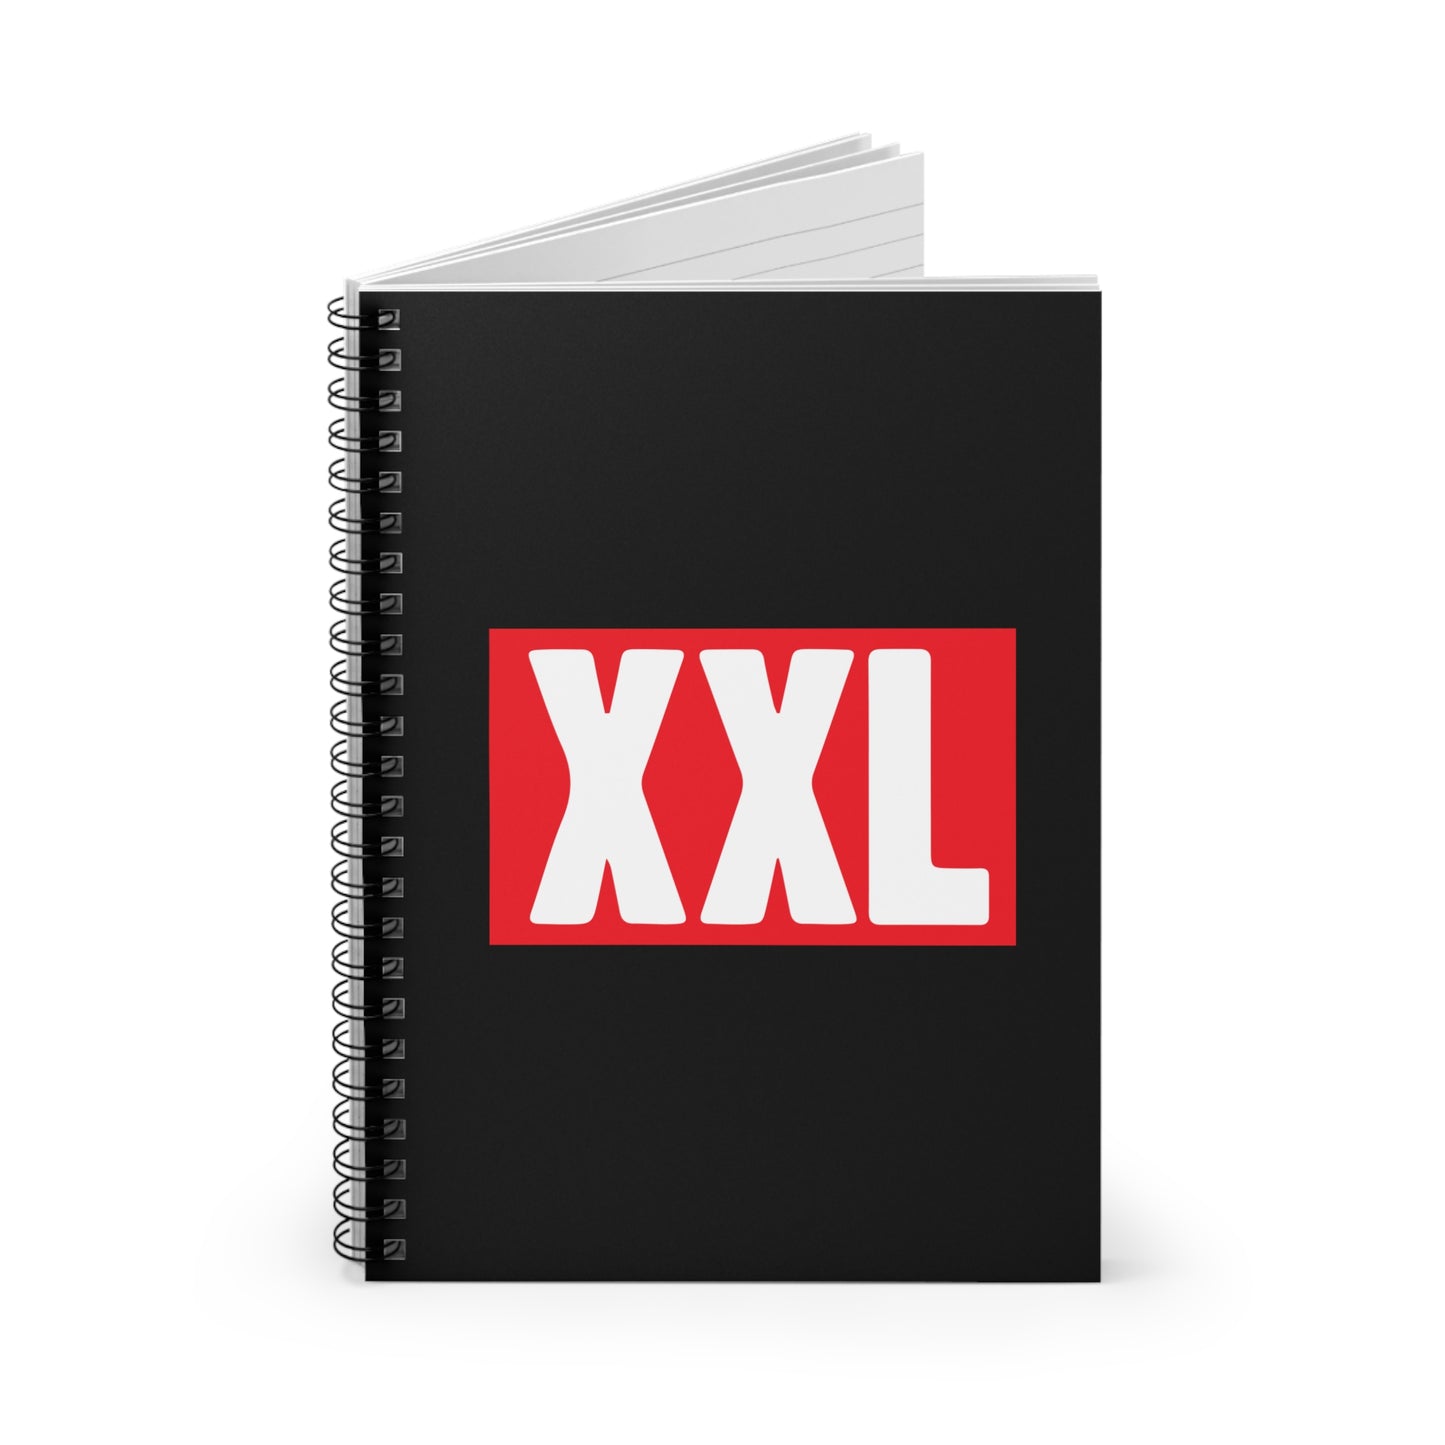 XXL Spiral Notebook - Ruled Line